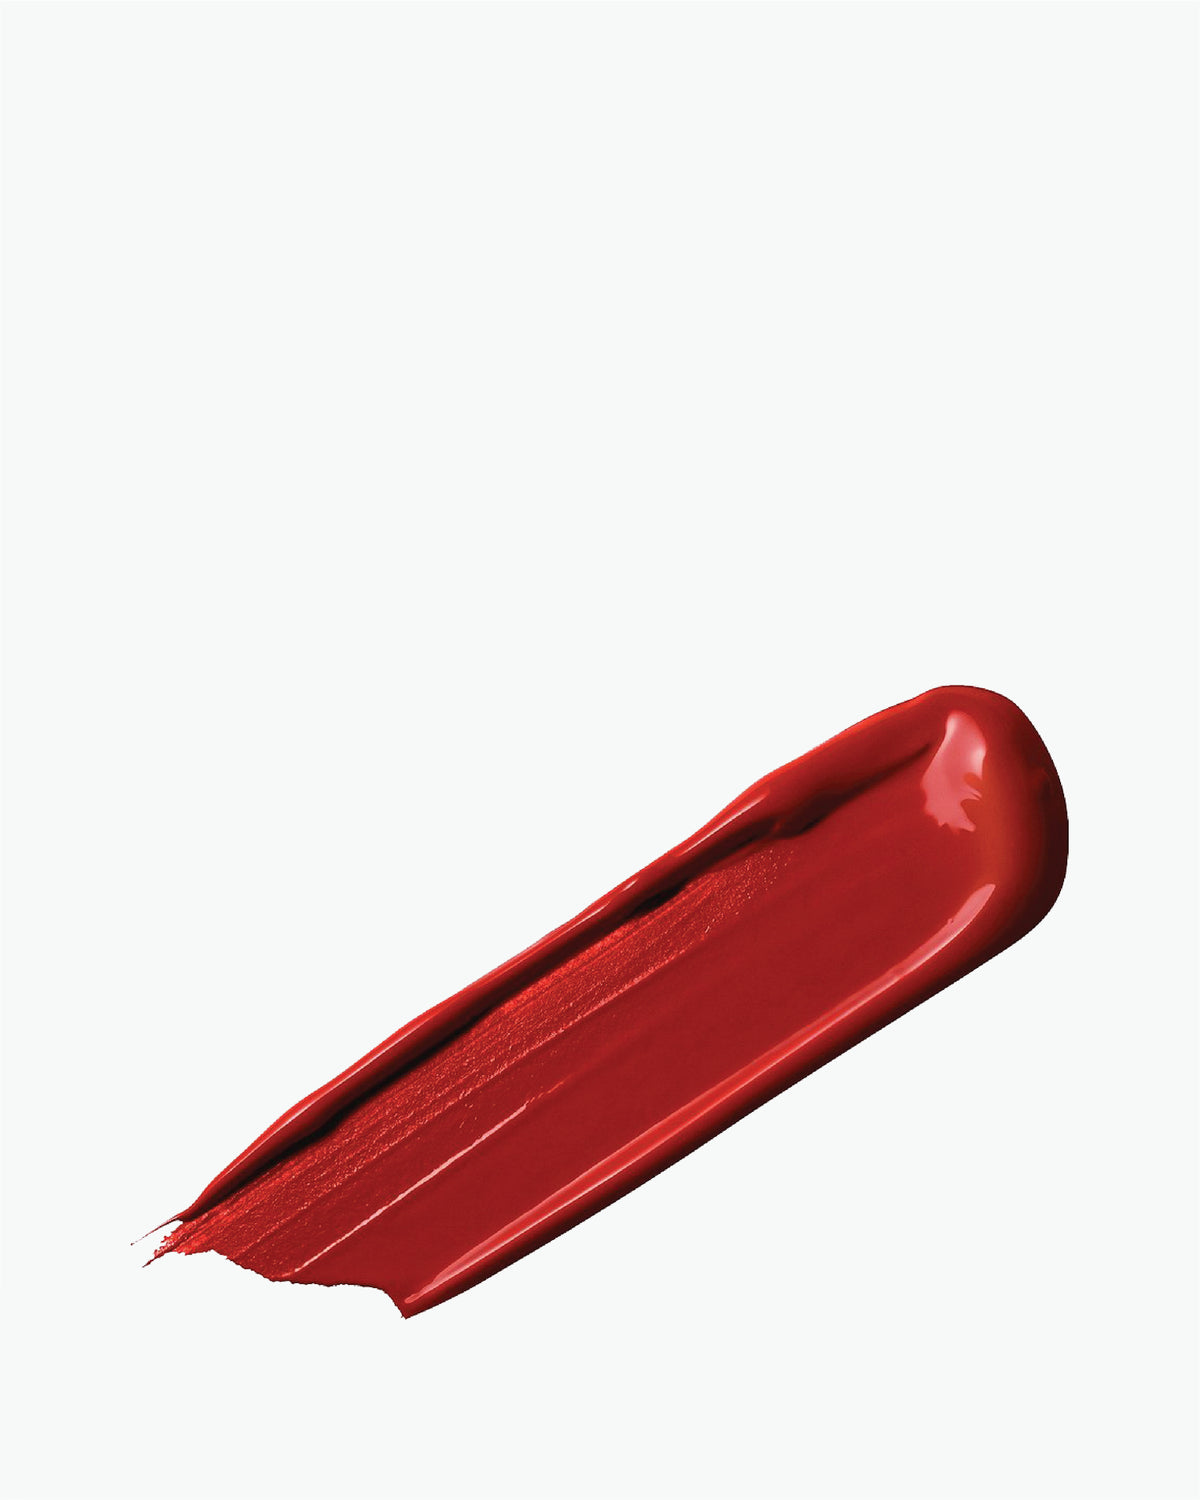 L’Absolu Rouge Ruby Cream, Ultra Pigmented Lipstick 3g